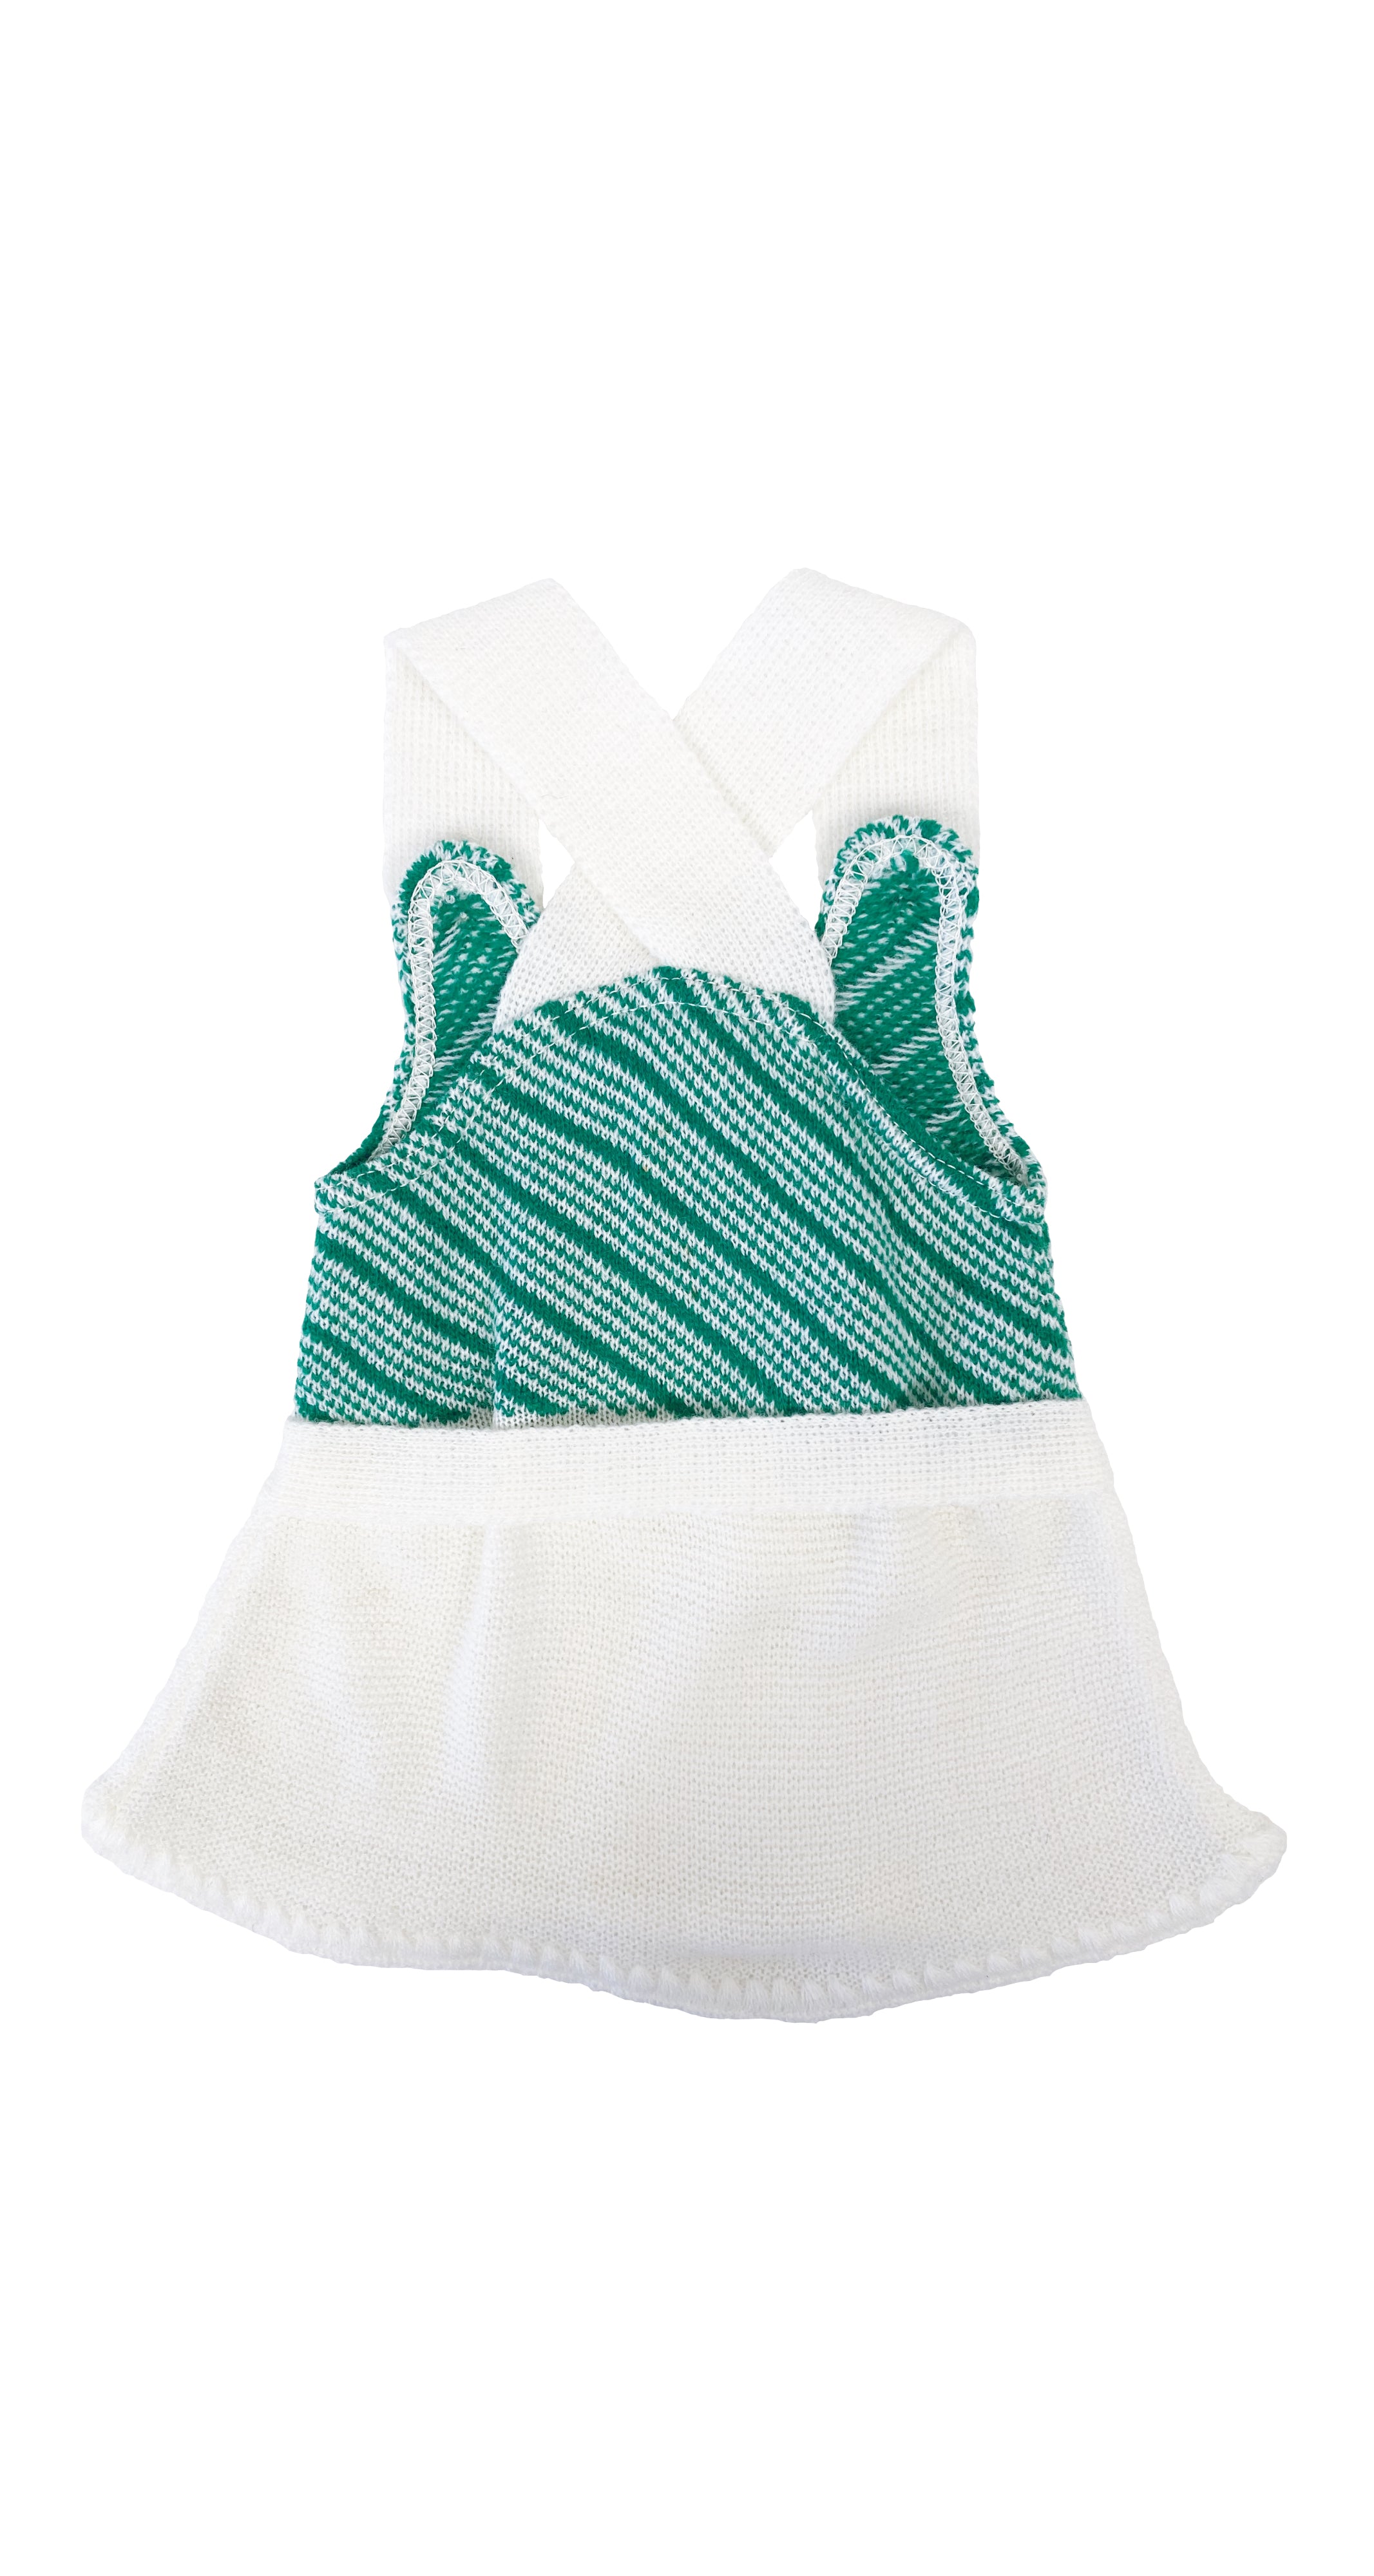 1970s NOS Girl's Green & White Knit Dress 3M